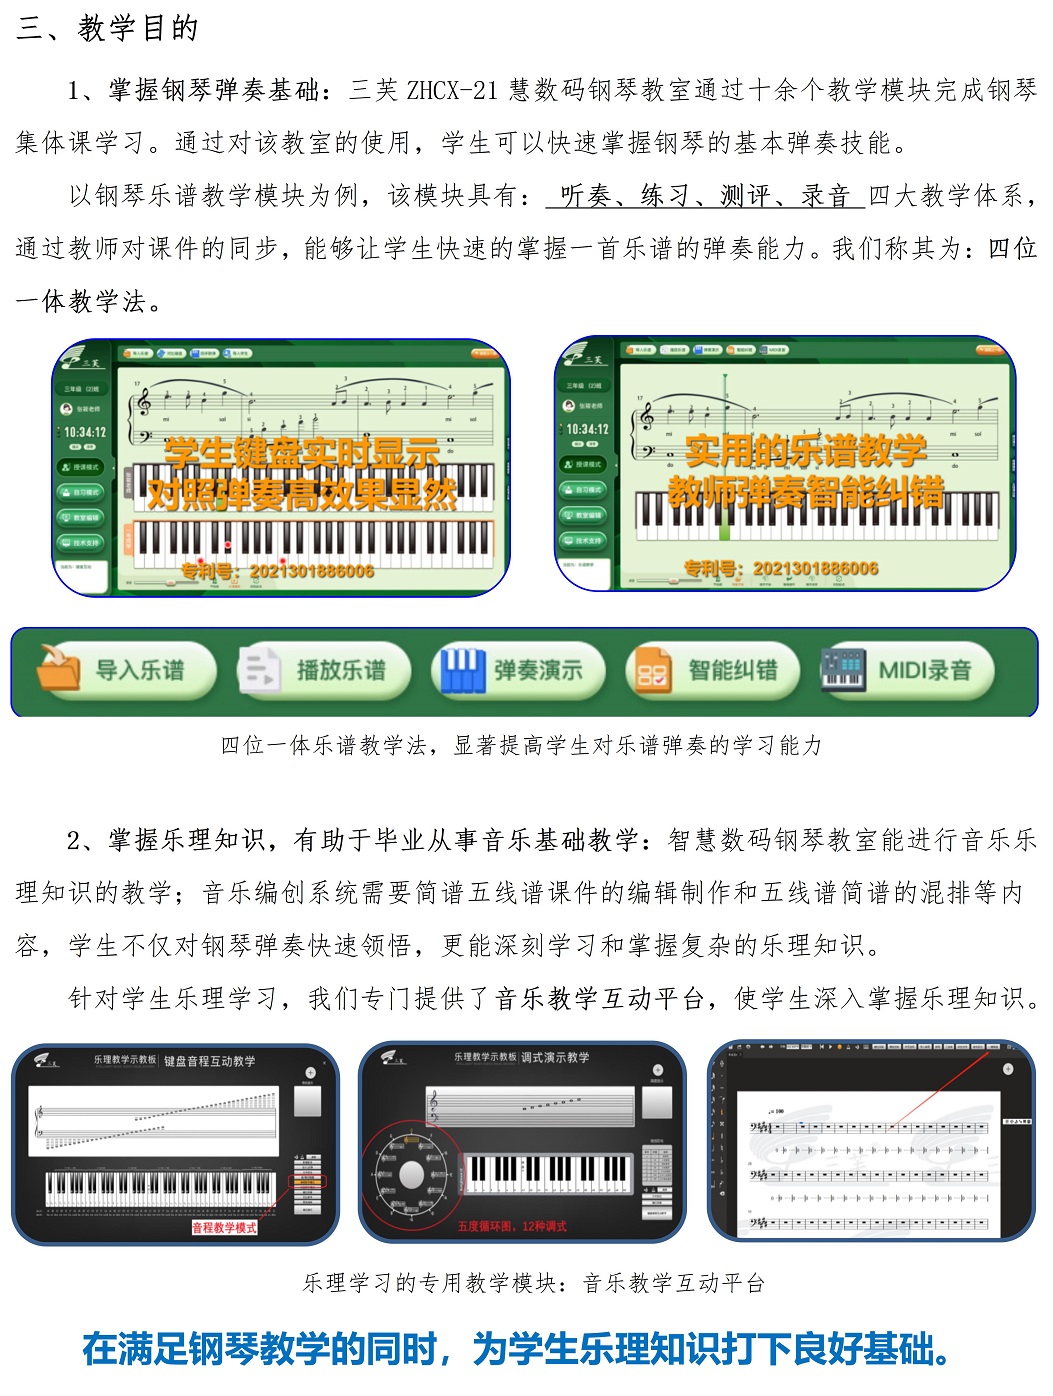 智慧钢琴教室2022年方案 - 副本_04.jpg